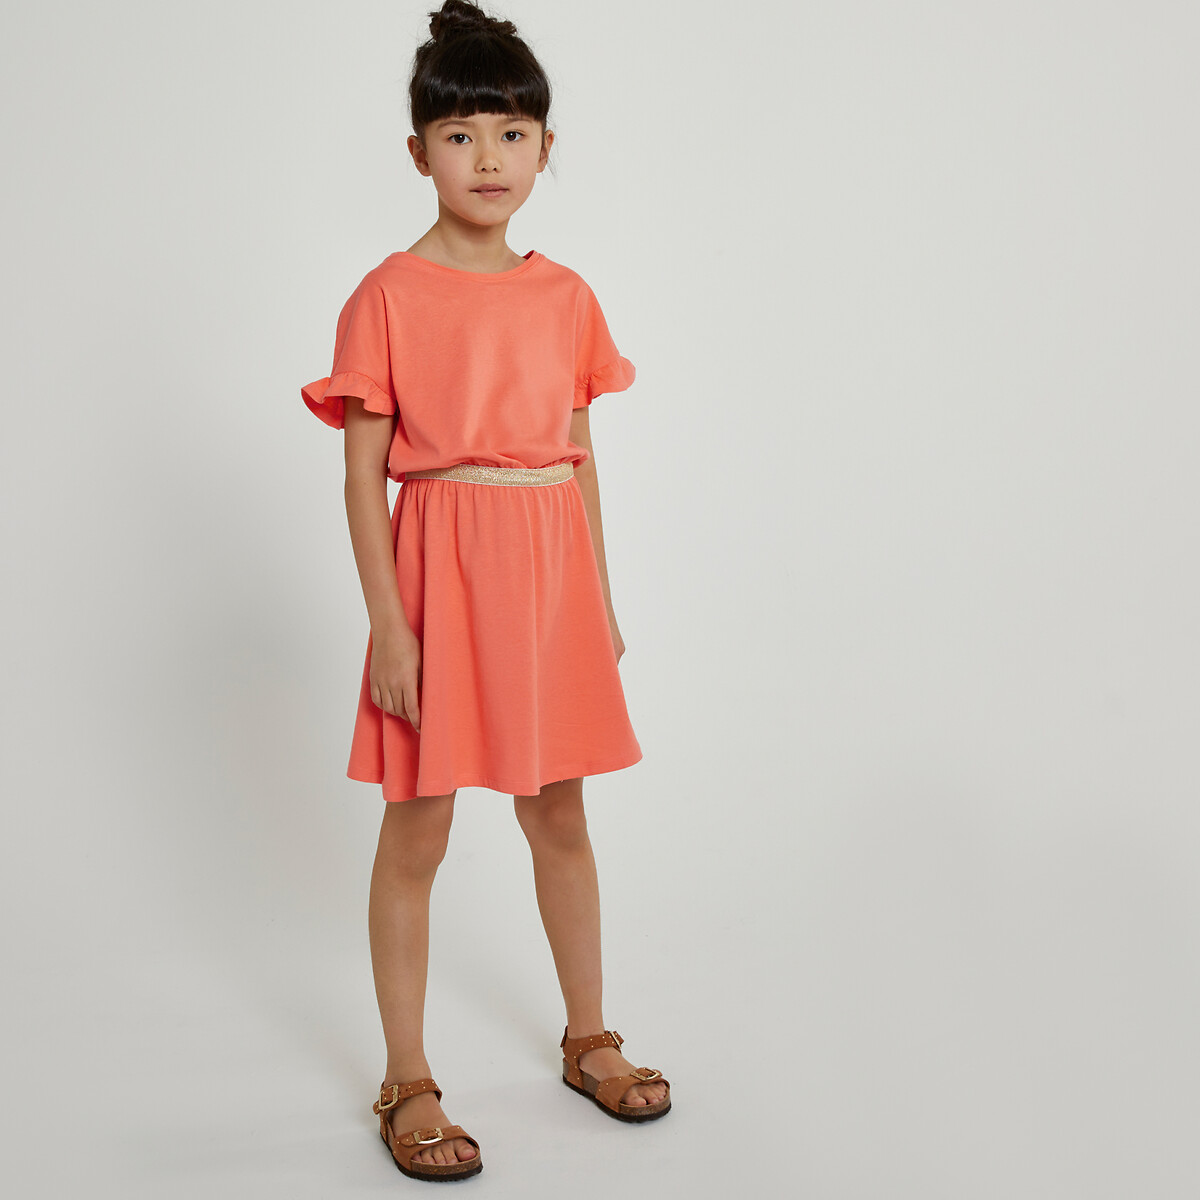 Платье с короткими рукавами с воланами 10 лет - 138 см оранжевый платье с короткими рукавами с воланами 10 лет 138 см оранжевый